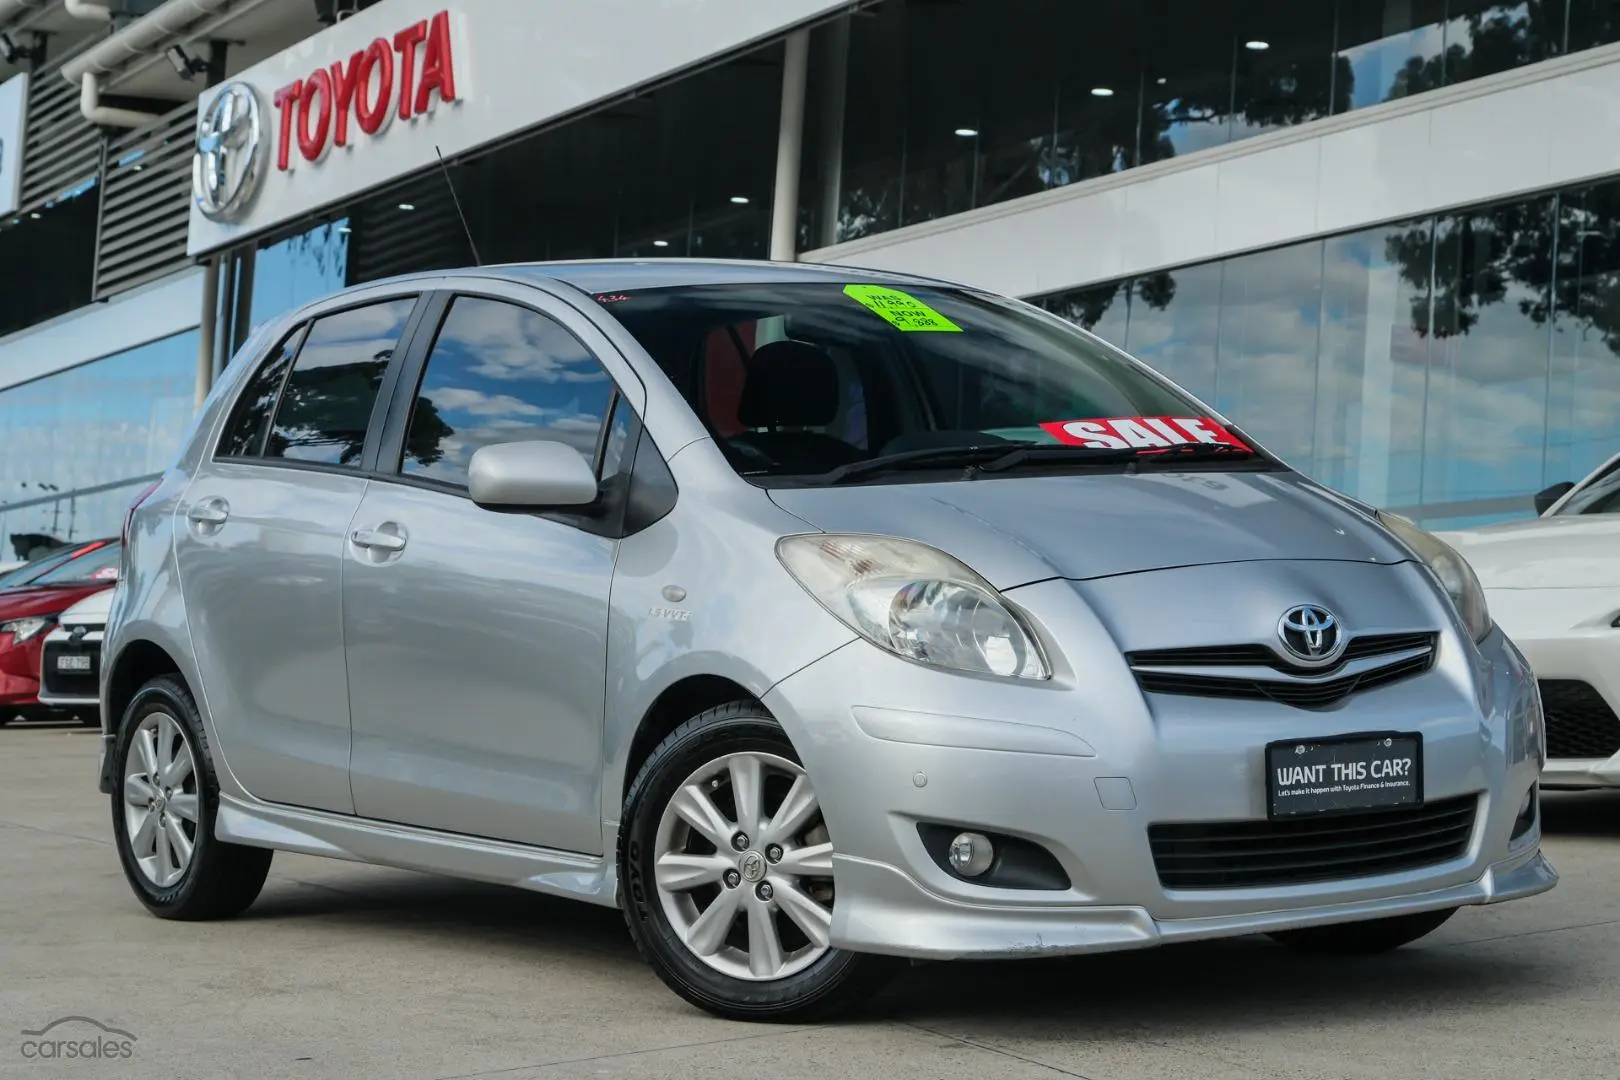 2008 Toyota Yaris Image 1